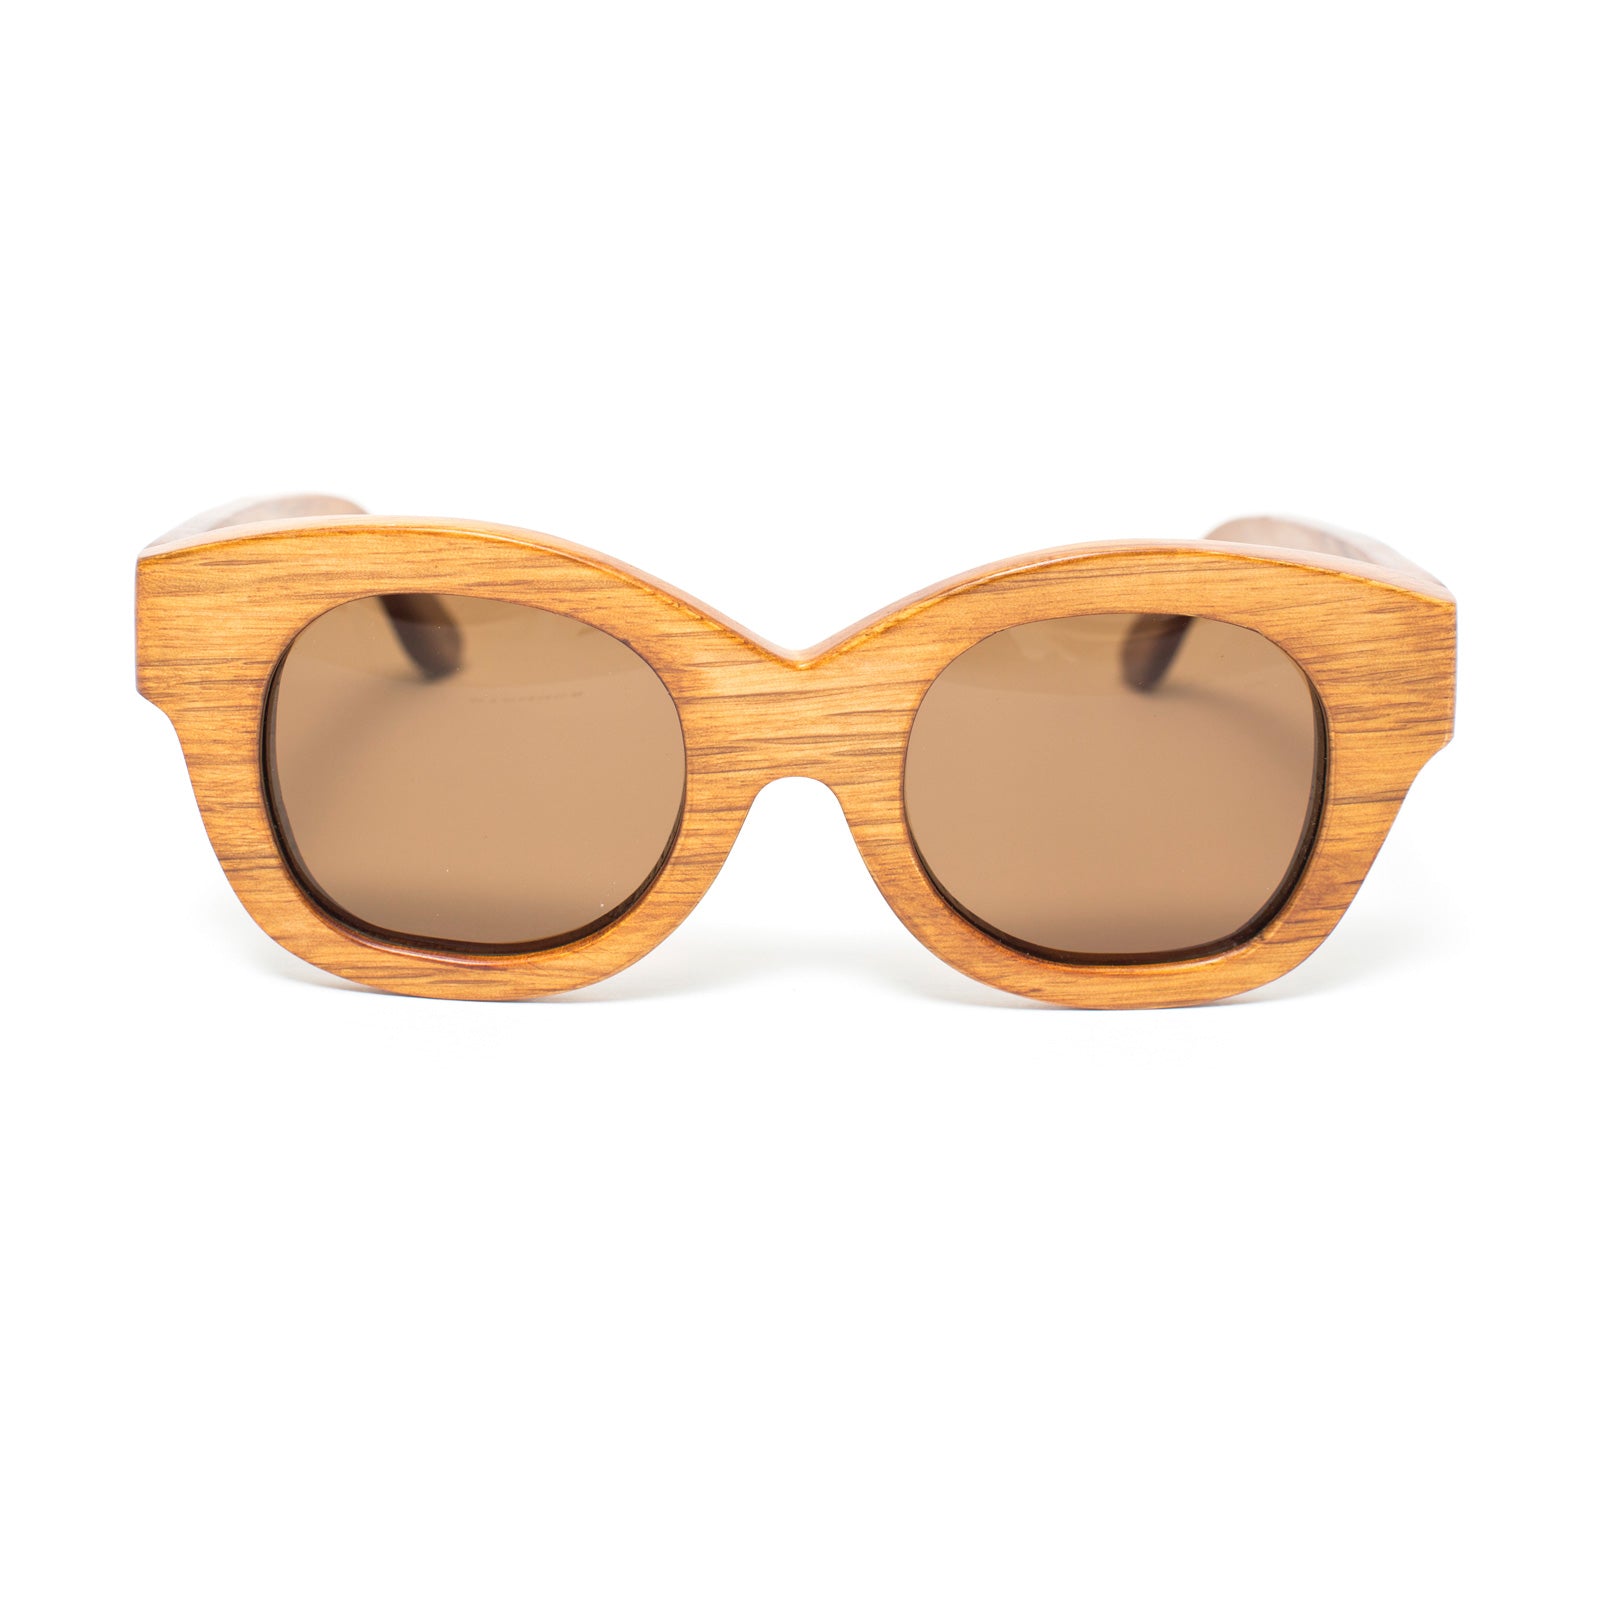 Halle wood sunglasses